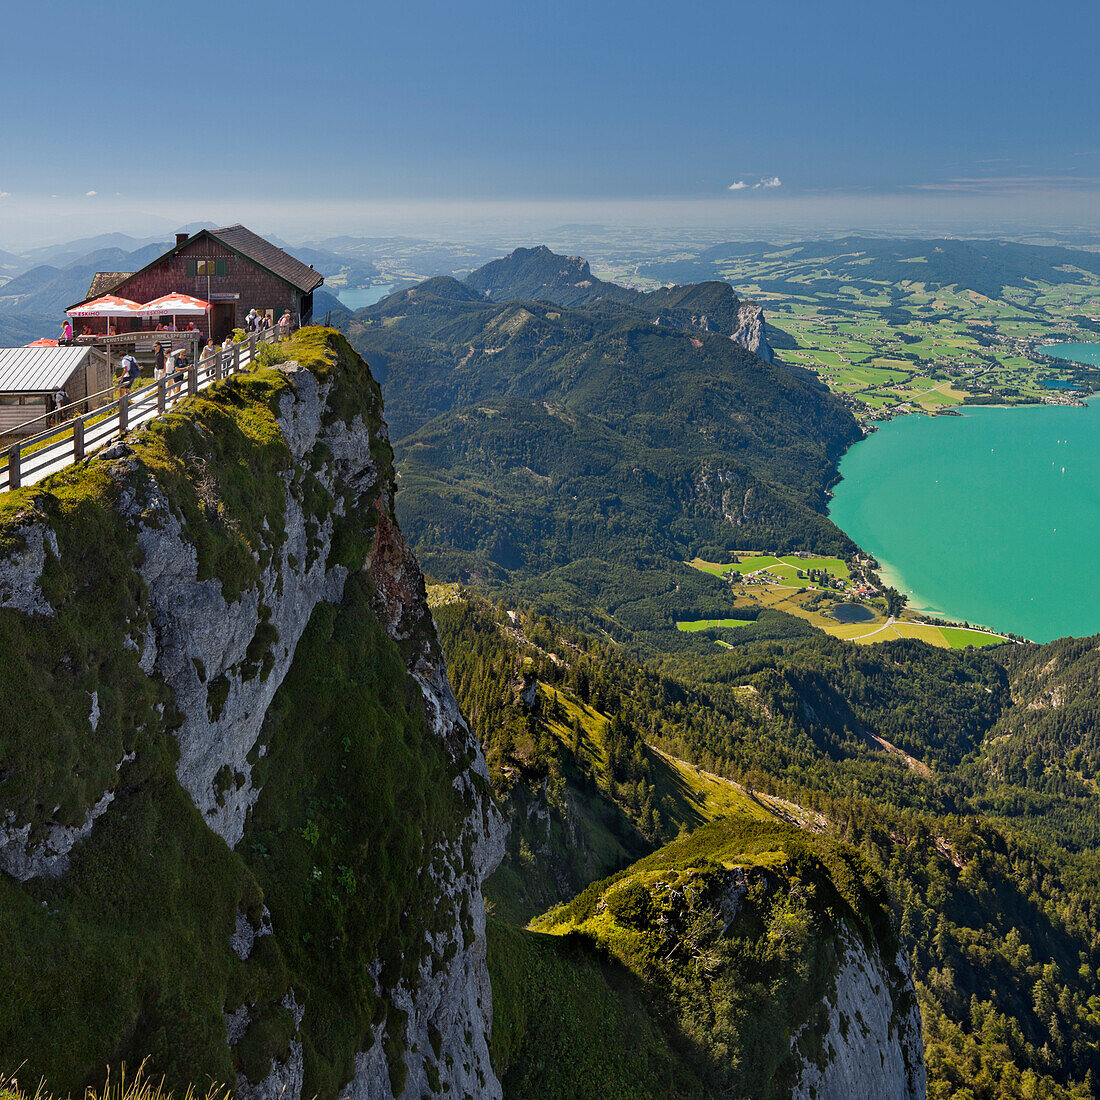 Blick vom Schafberg auf die Himmelpfortenhütte, Mondsee, Salzkammergut, Salzburg Land, Österreich